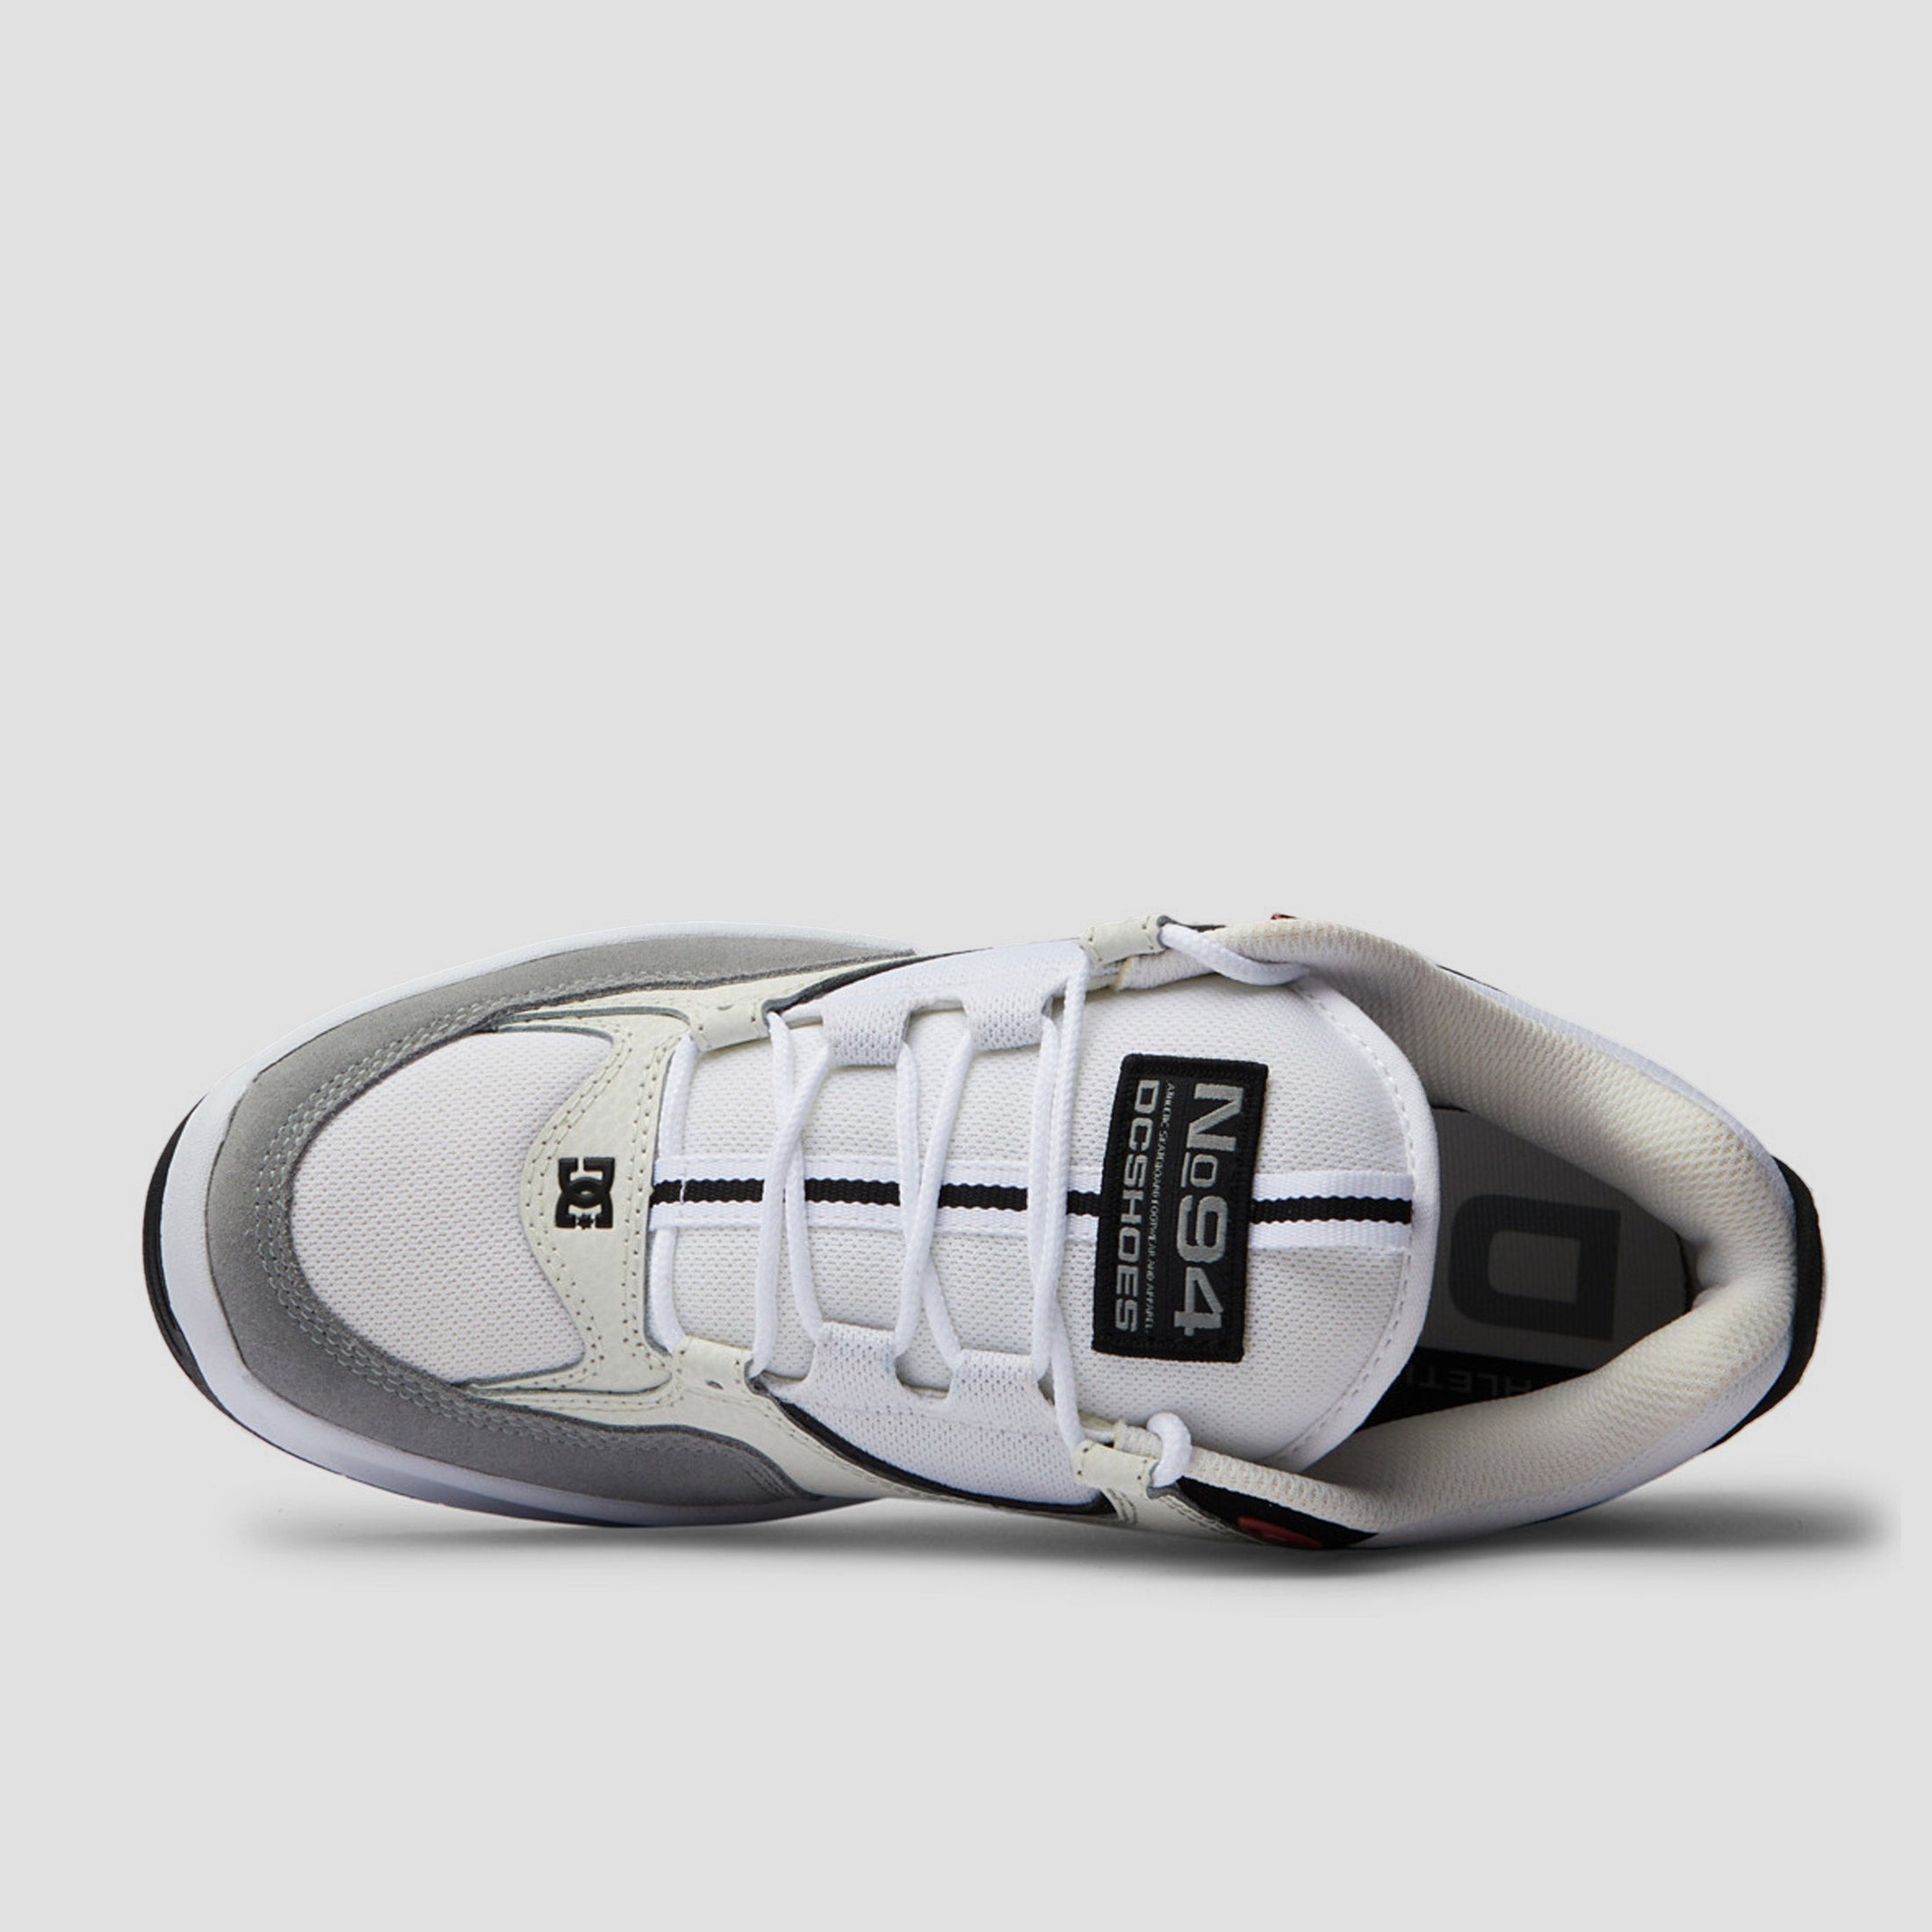 DC Kalynx Zero Skate Shoes Grey Black White